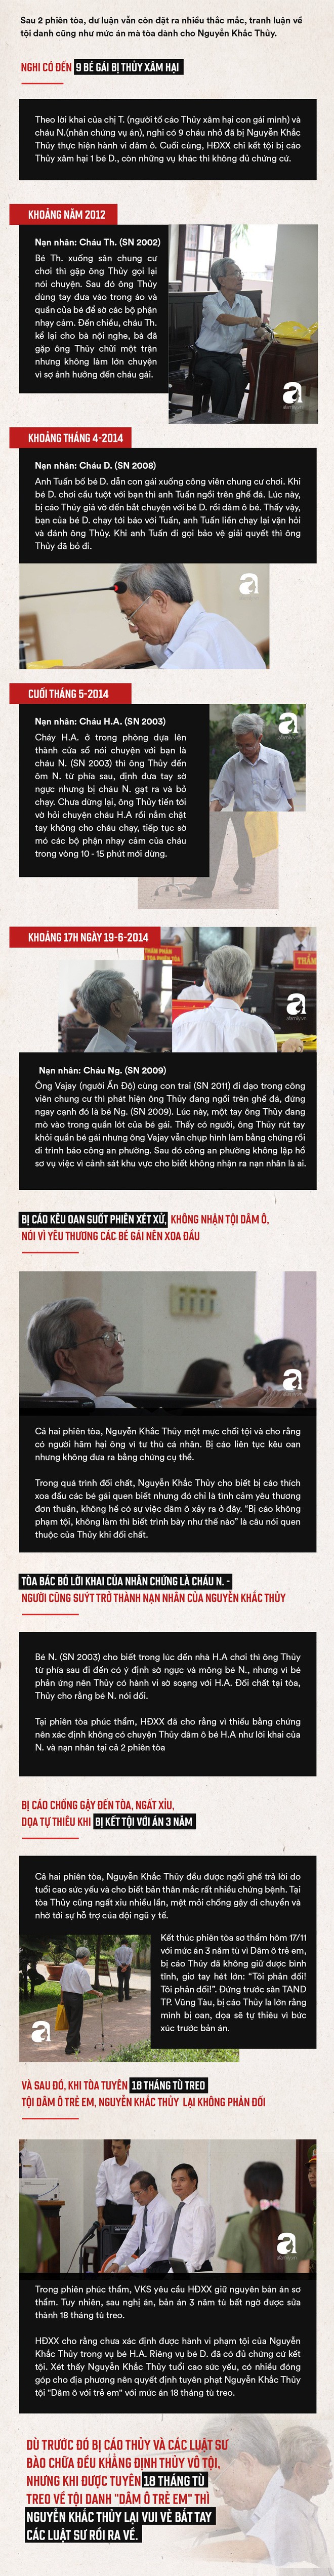 Toàn cảnh vụ Nguyễn Khắc Thủy 77 tuổi dâm ô trẻ em ở chung cư, được giảm án tù 3 năm thành án treo 18 tháng - Ảnh 2.